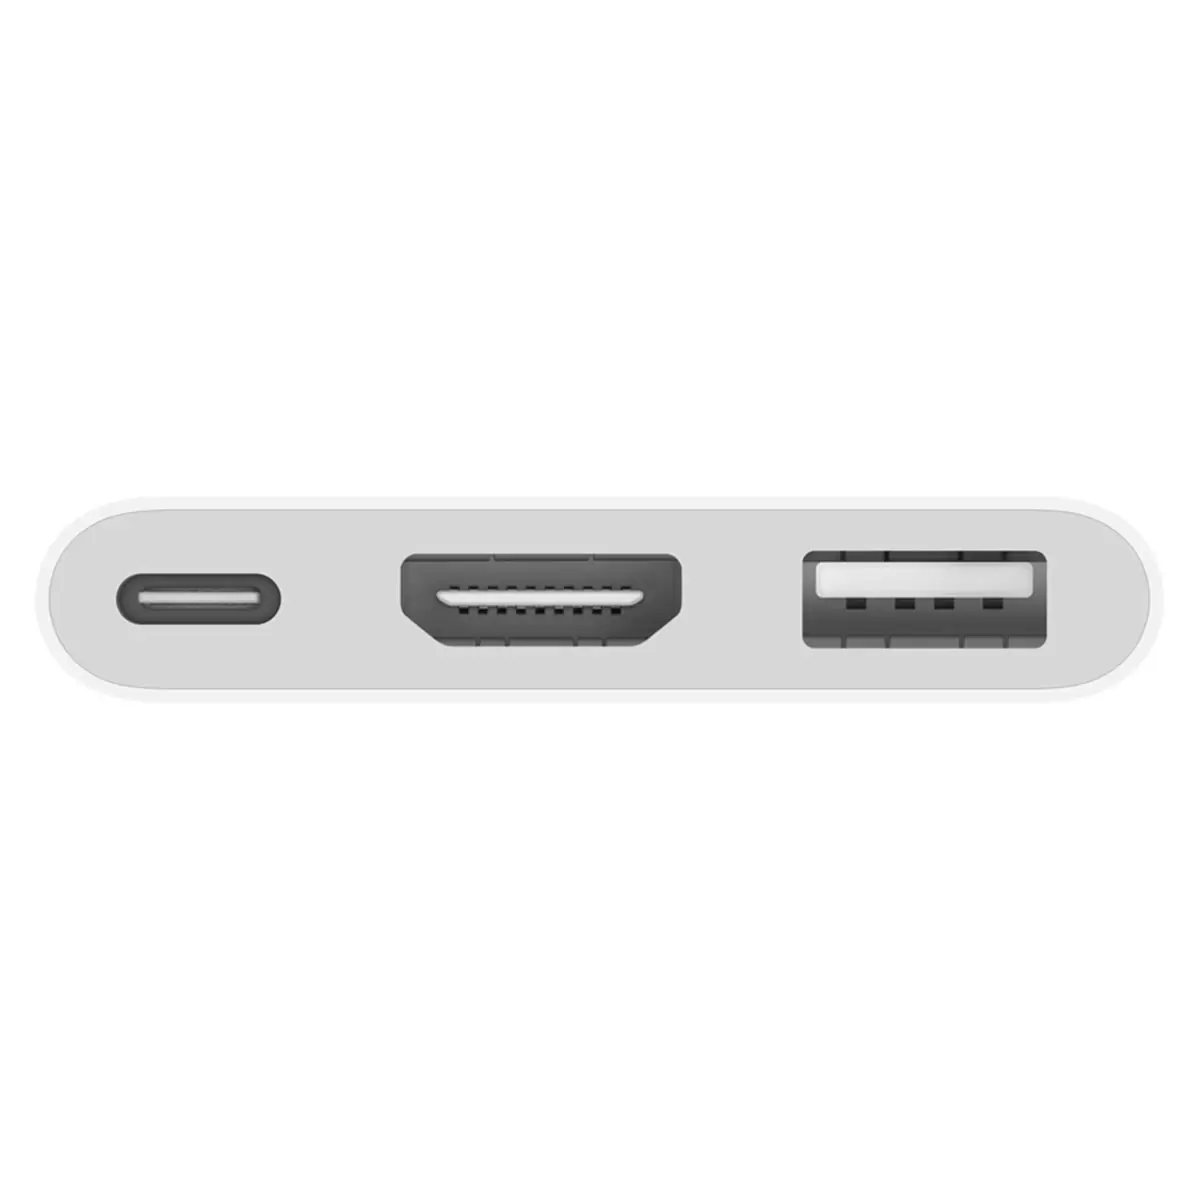 Buy Apple USB-C Digital AV Multiport Adapter, MUF82ZM/A at costco.co.uk